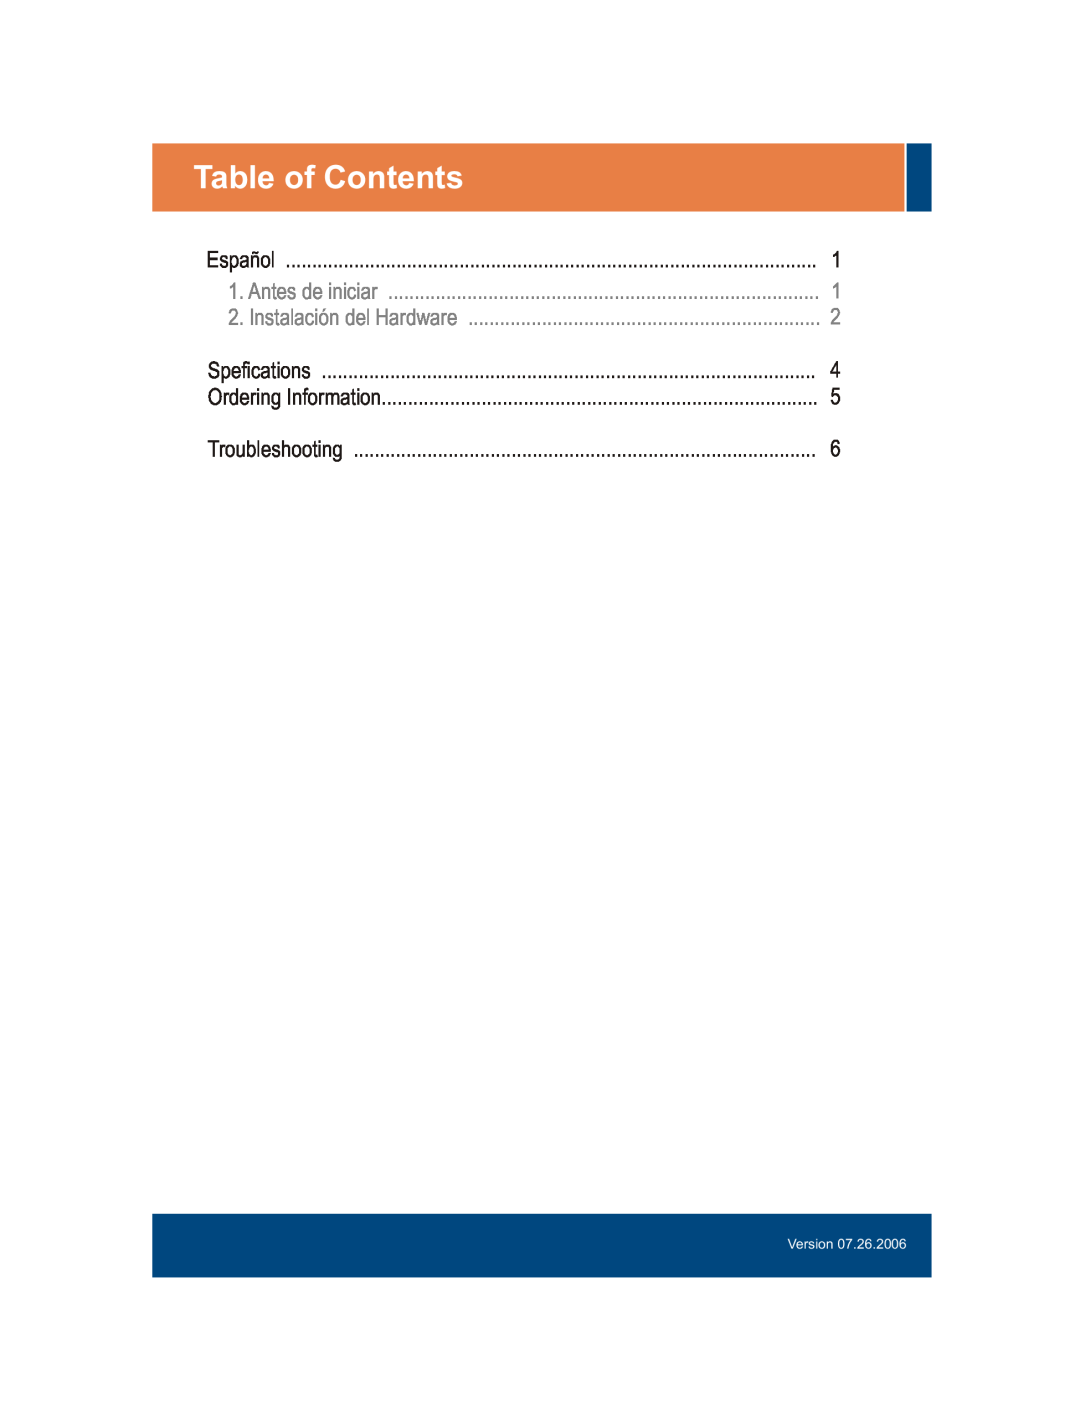 TRENDnet TFC-1000MSC Table of Contents, Español, Antes de iniciar, Instalación del Hardware, Spefications, Troubleshooting 